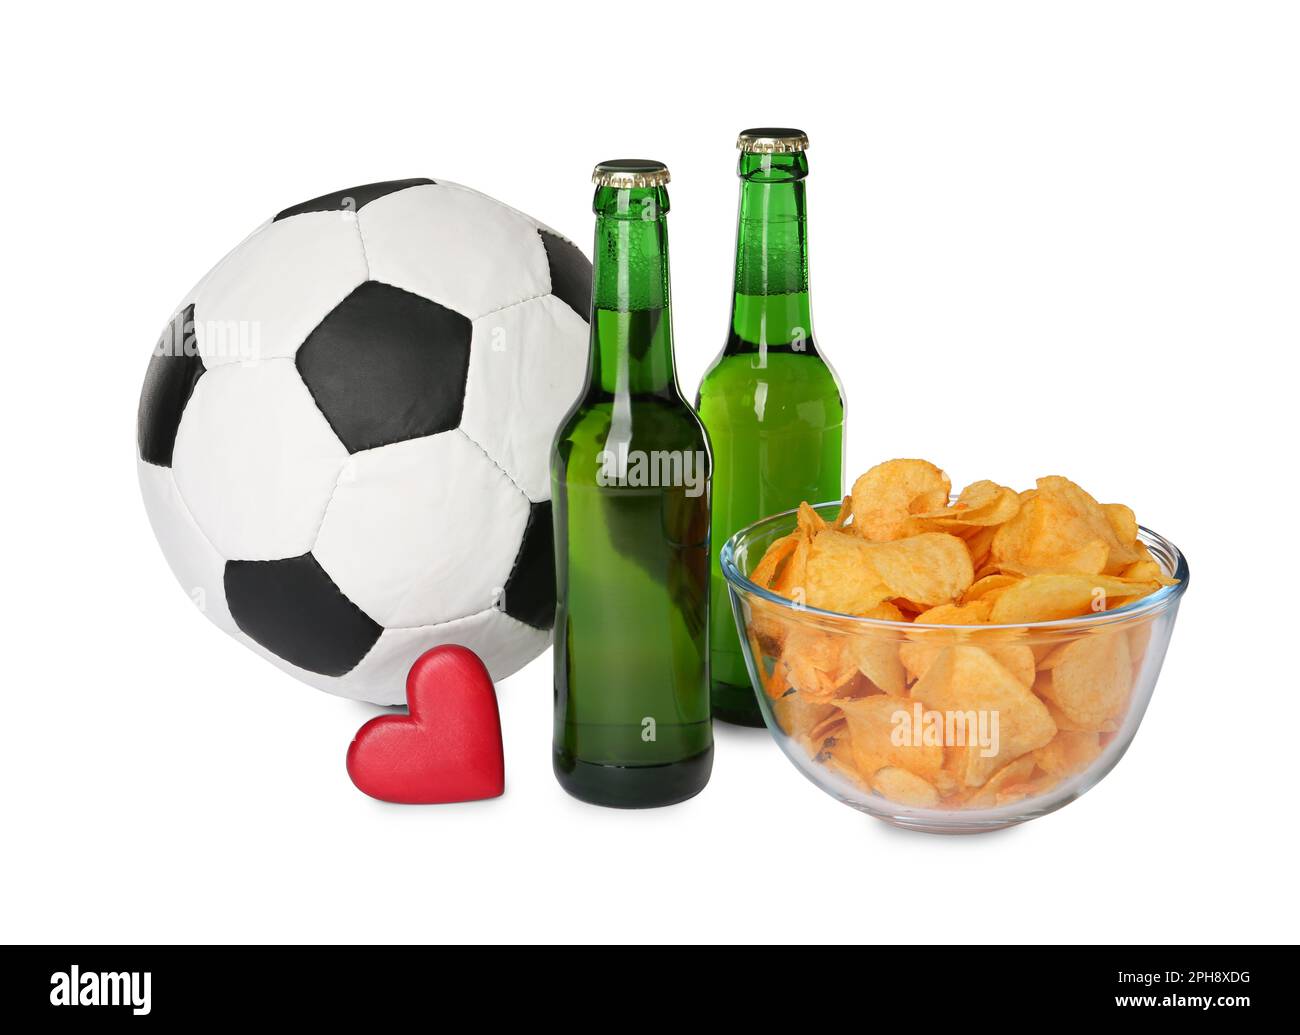 Fußball, Bier, Chips und Herz auf weißem Hintergrund Stockfoto